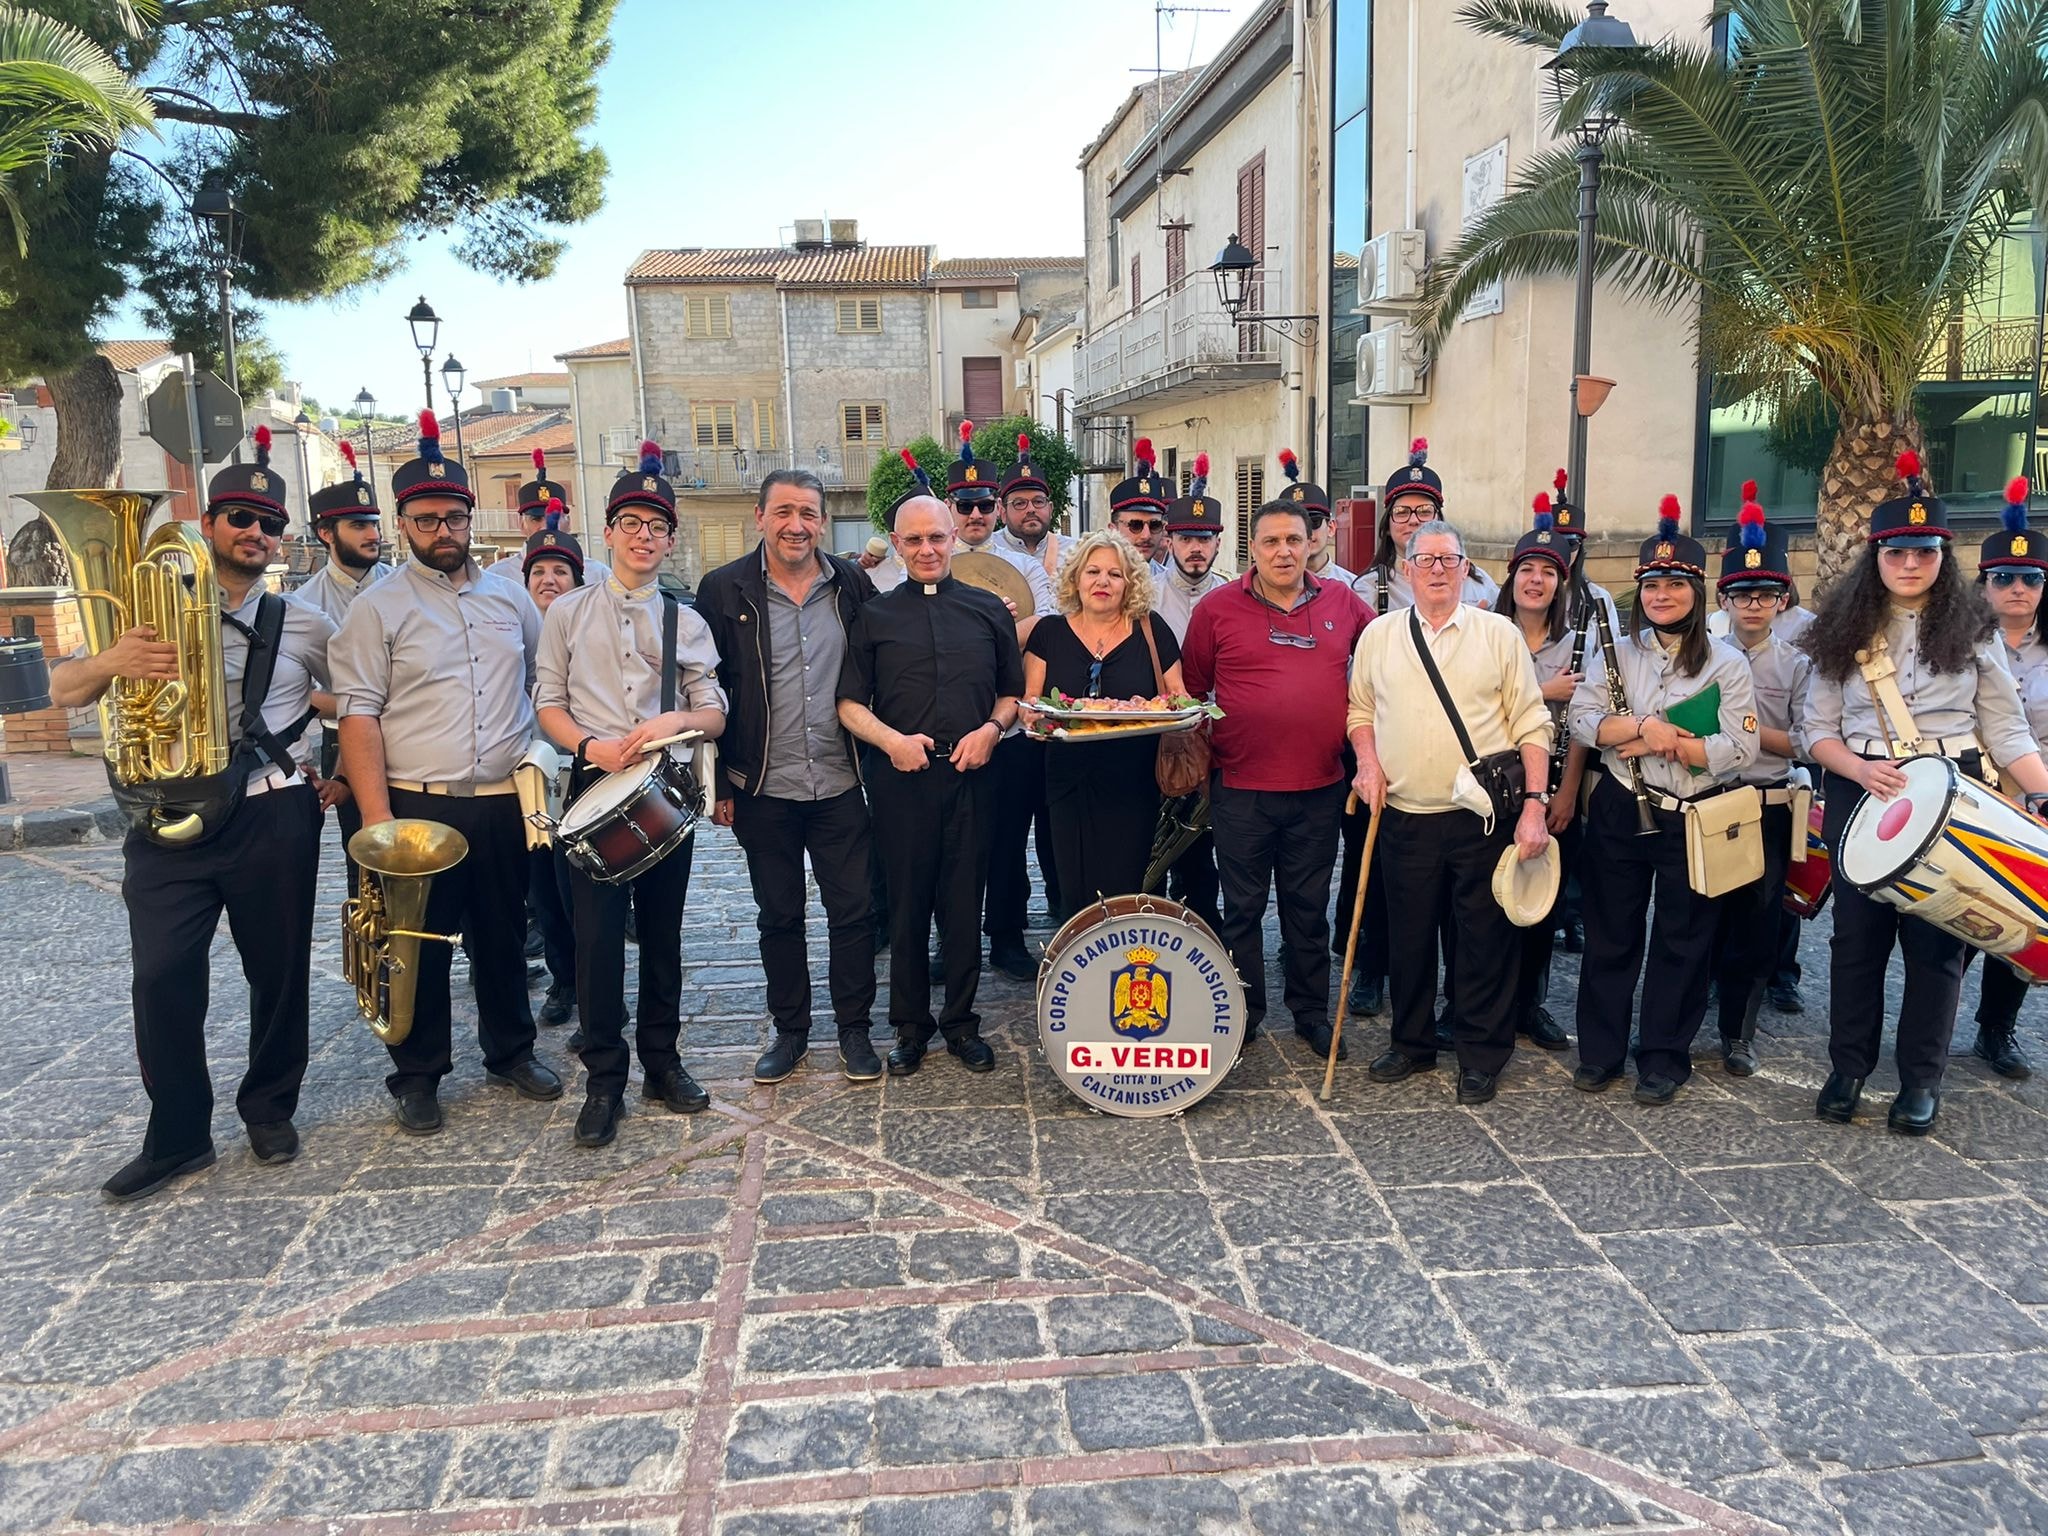 Bompensiere, banda musicale e processione per Santa Rita